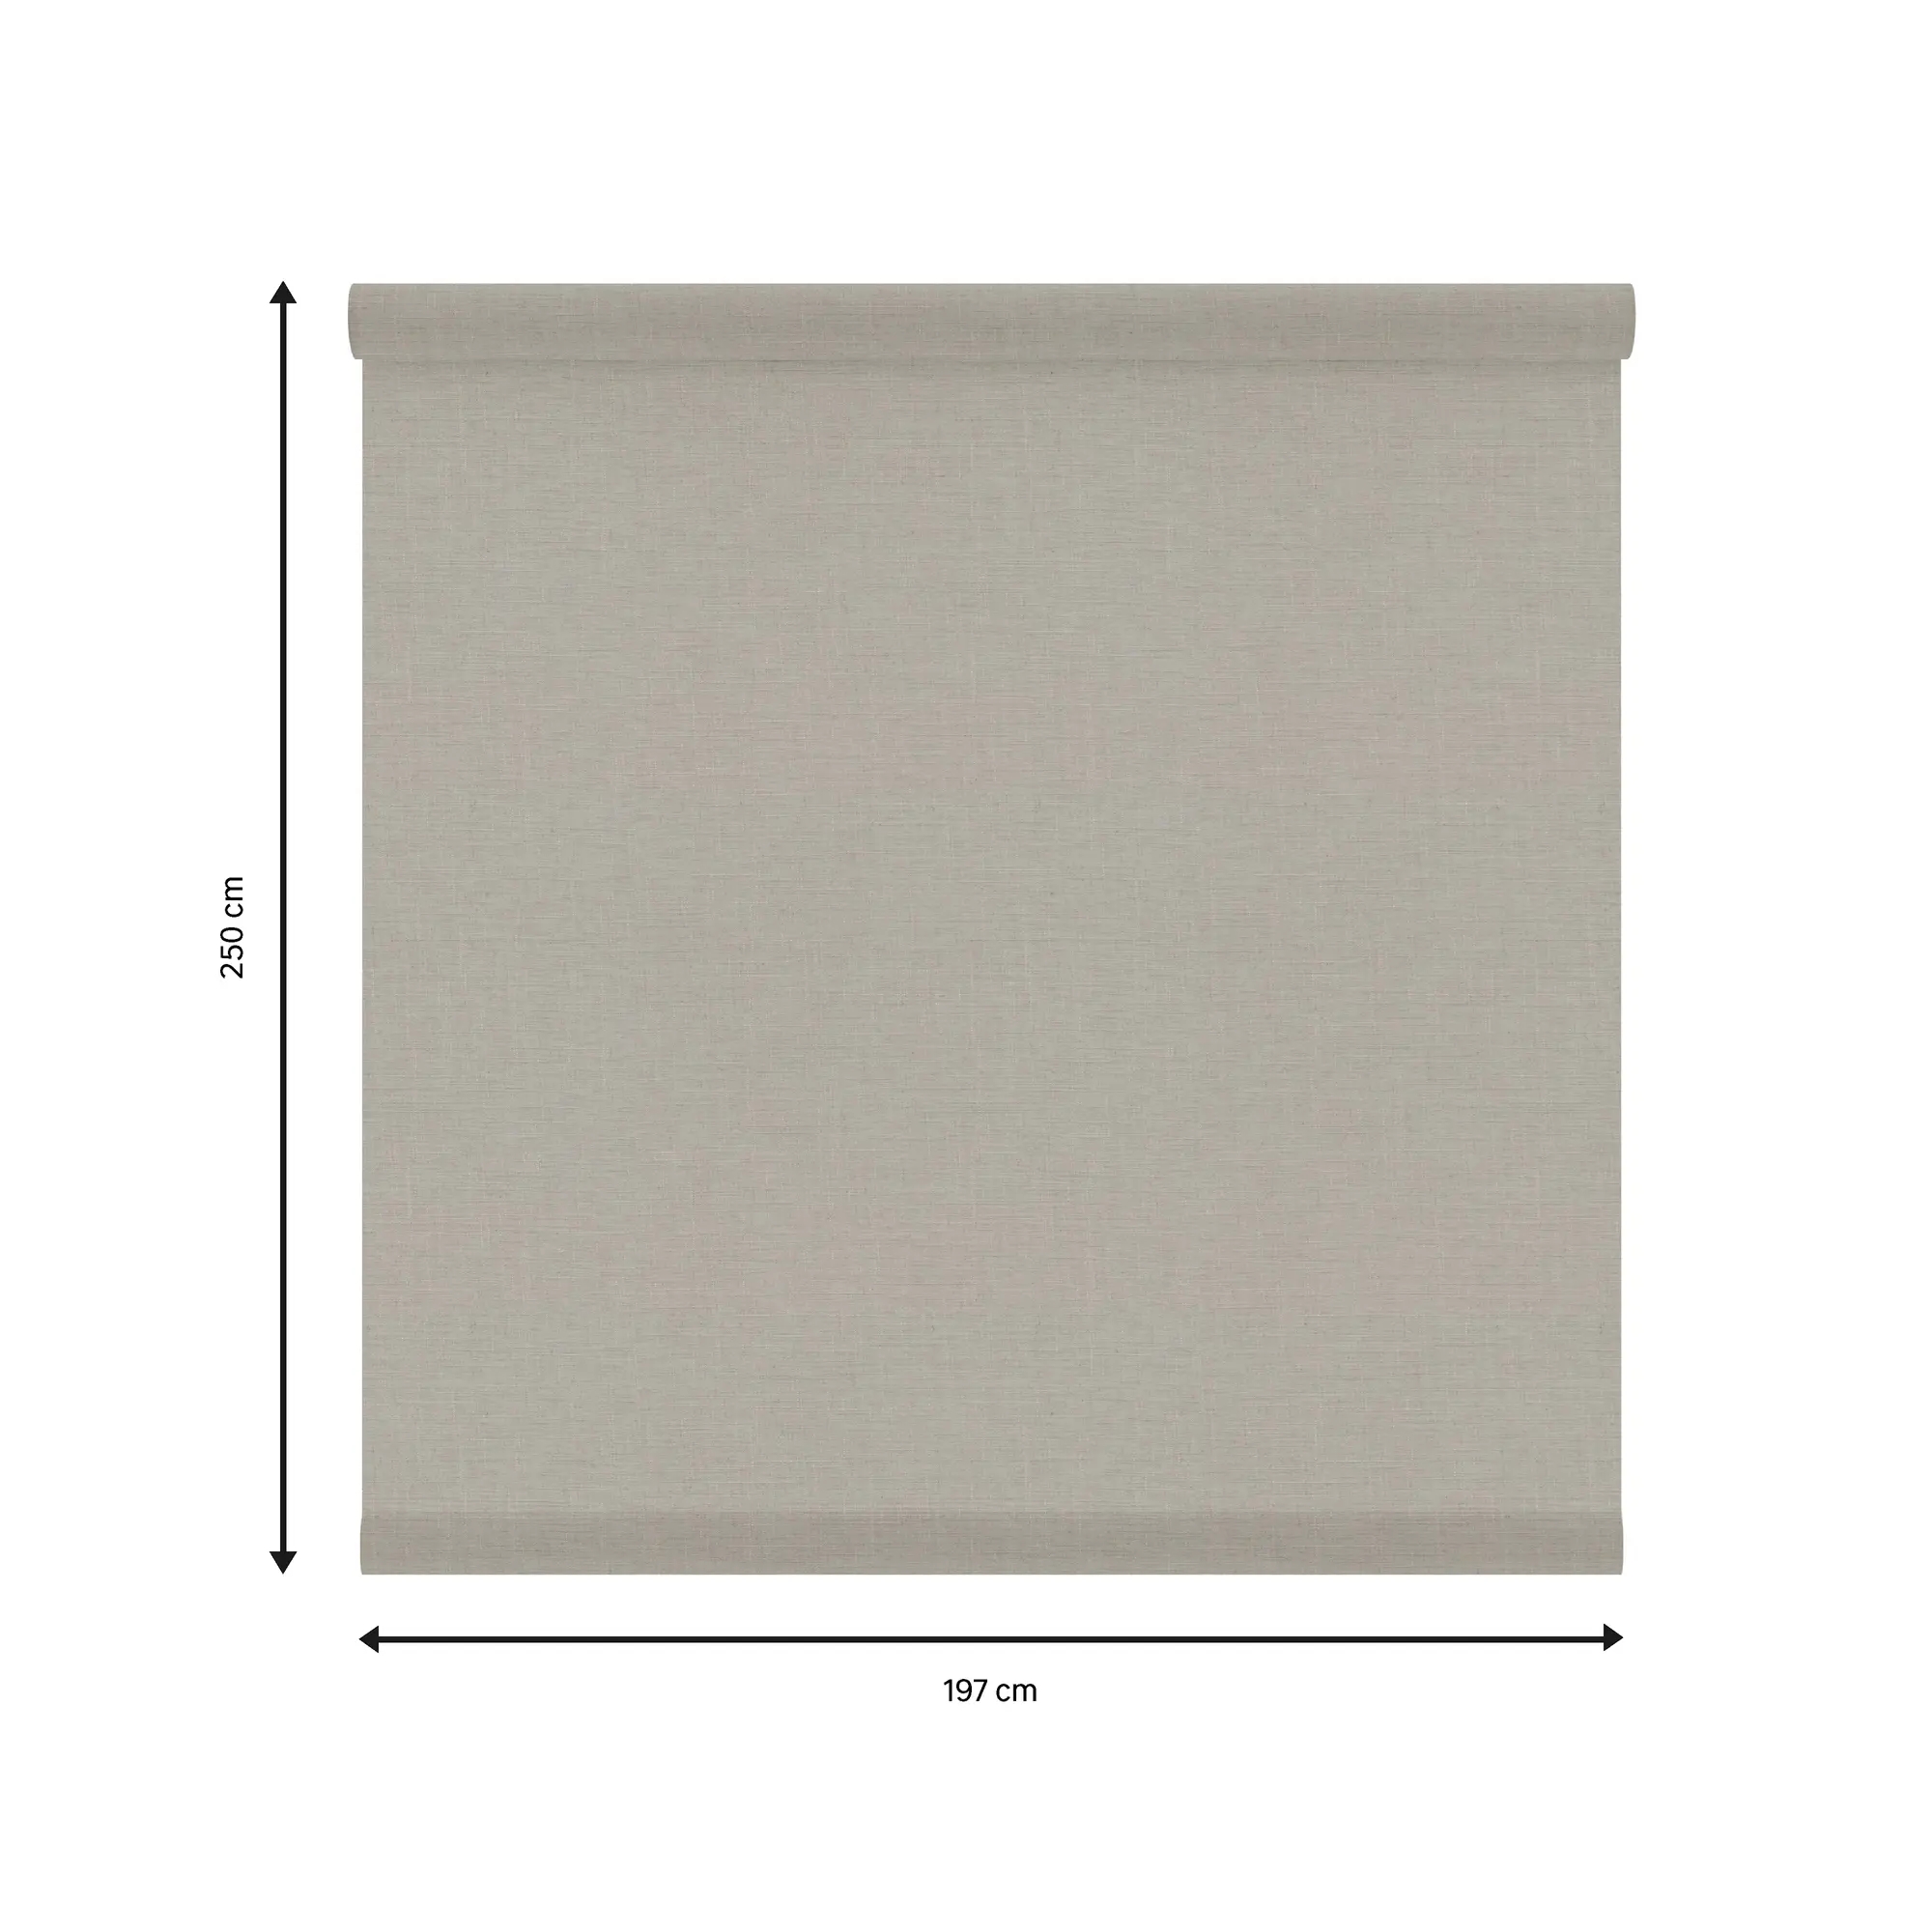 Tessuto per tende a rullo filtrante INSPIRE Brisbane beige 197 x 250 cm - 5